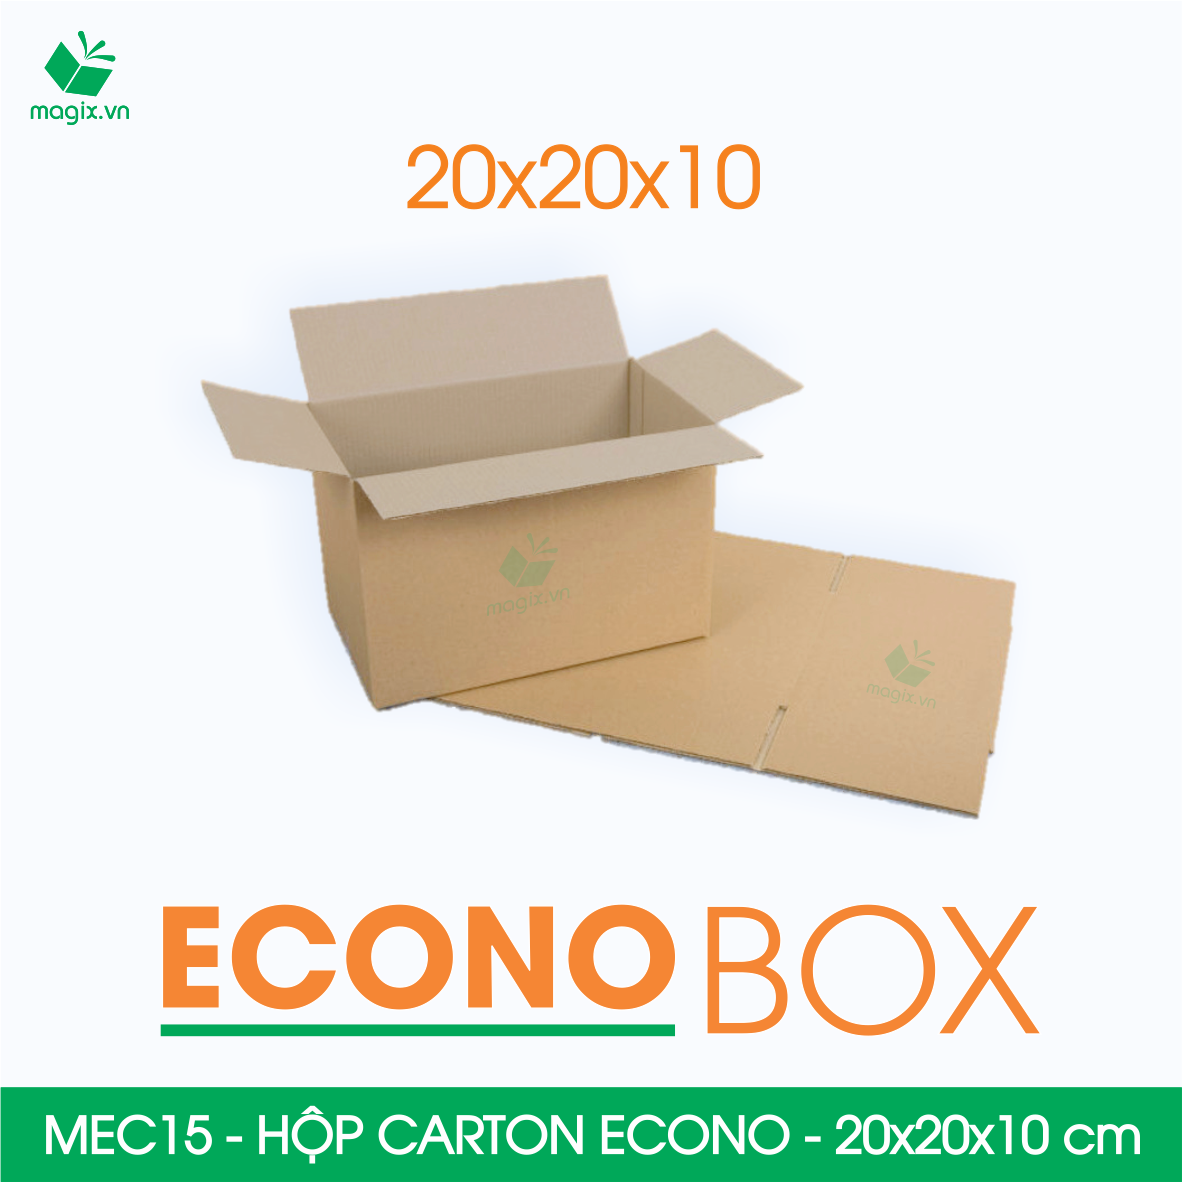 Hình ảnh MEC15 - 20x20x10 cm - Combo 60 thùng hộp carton trơn siêu tiết kiệm ECONO